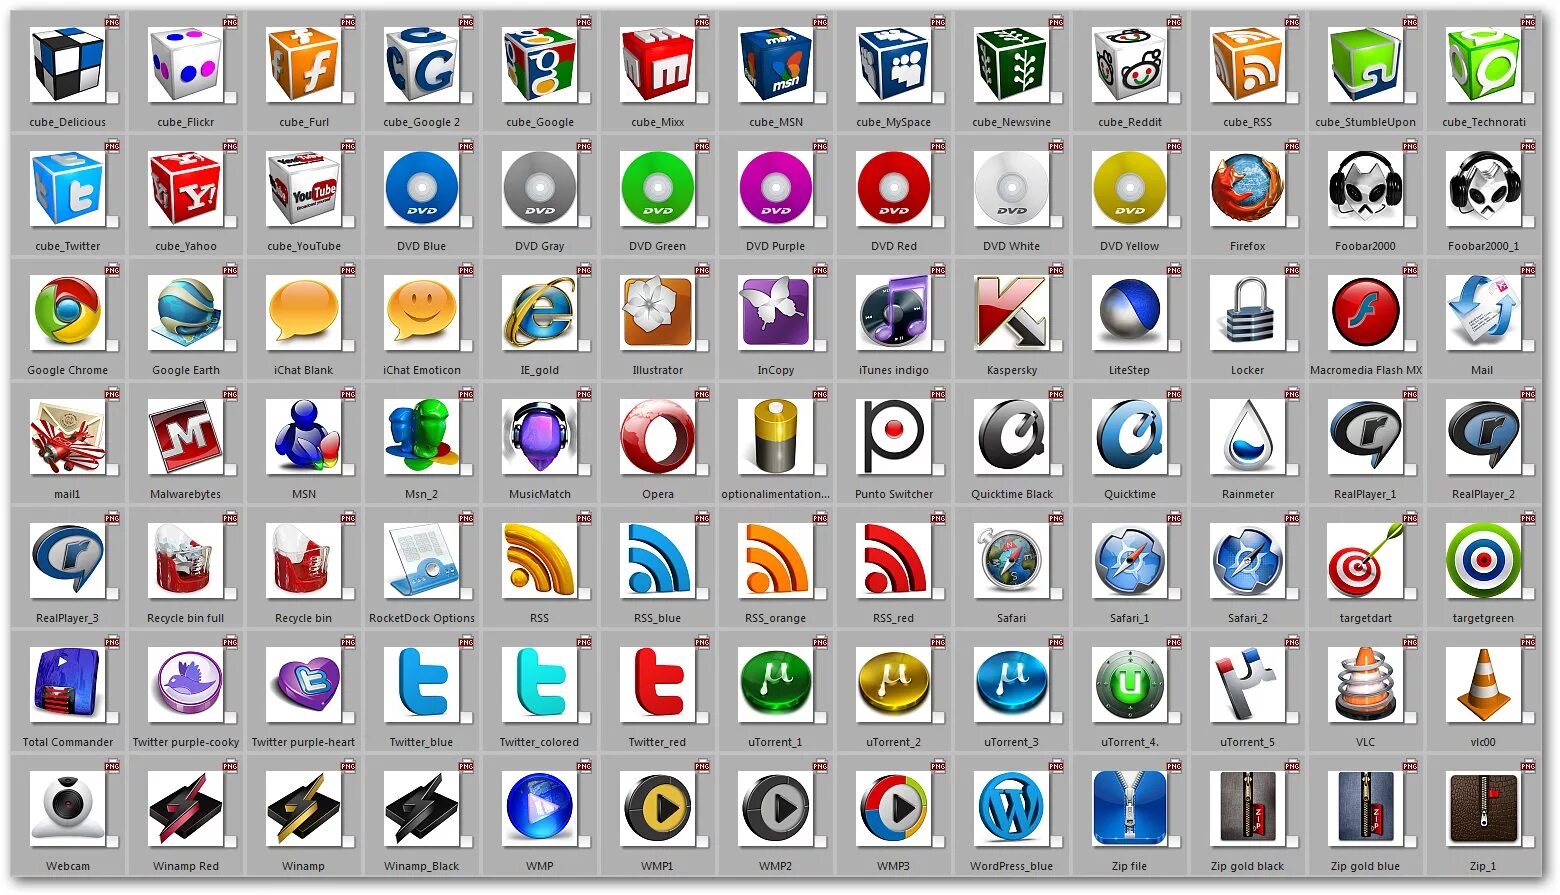 Показать информацию видео. Значки программ для компьютера. Иконки программ с названиями. Красивые иконки для приложений. Компьютерные программы с иконками и названием.